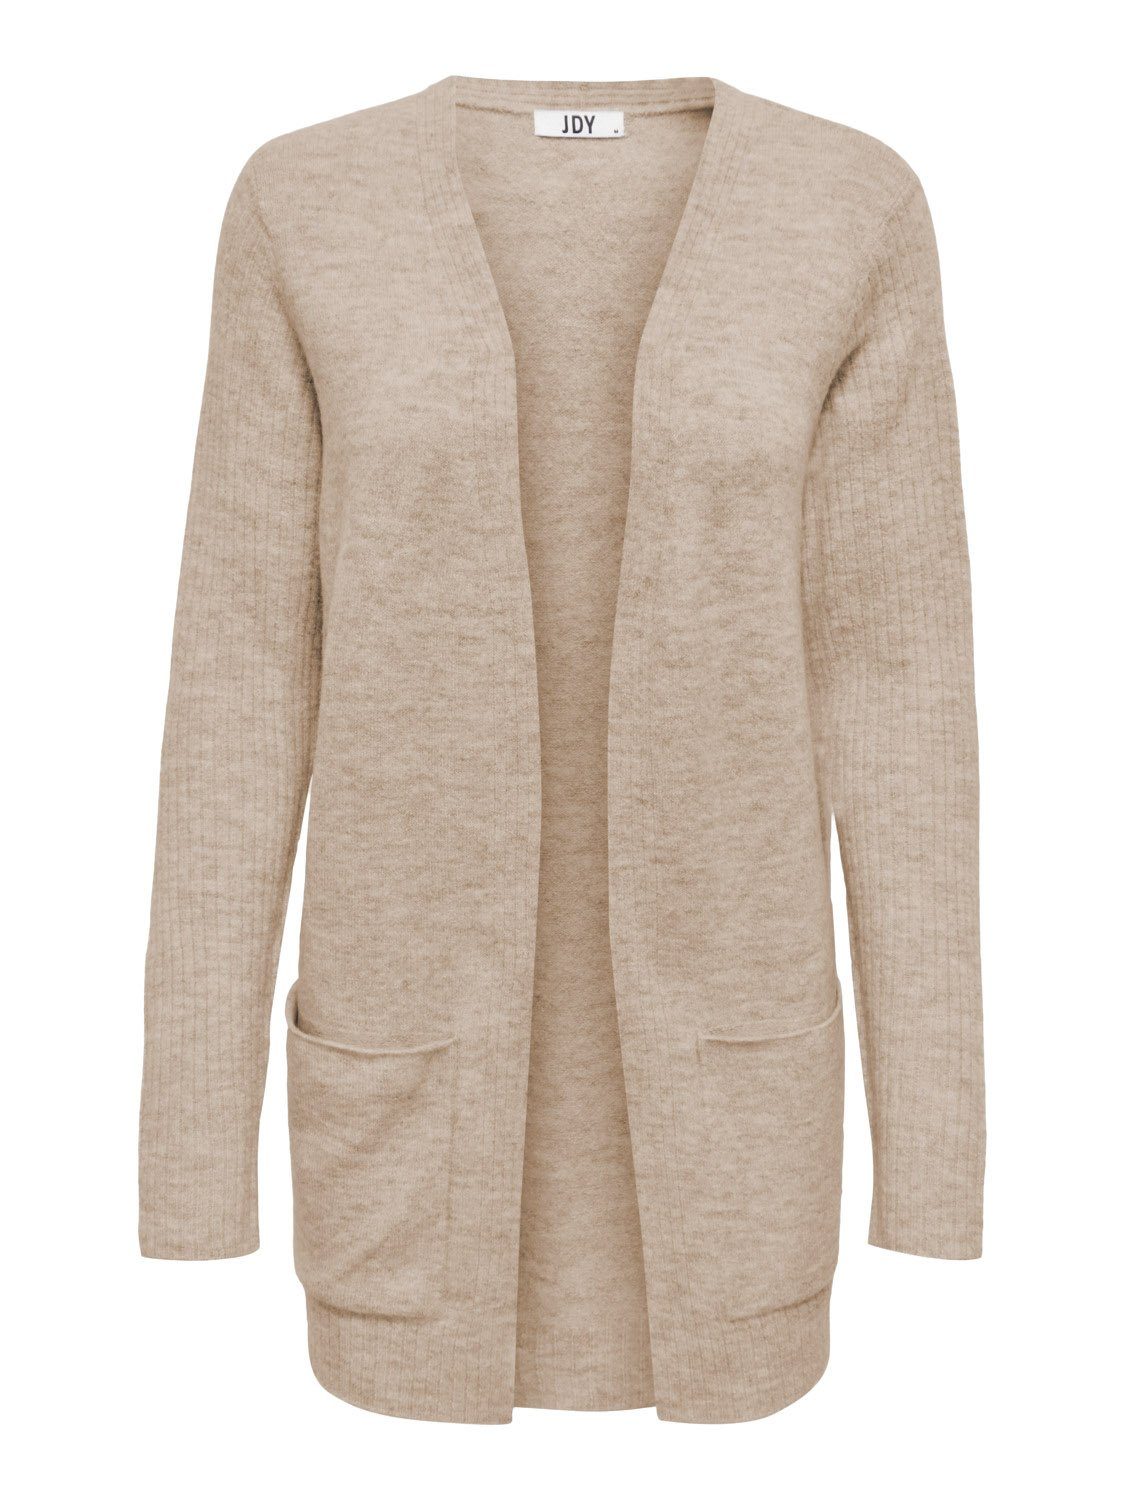 Braun mit YONG Taschen JDYSUNDAY Knitted Blazer 4009 de Cardigan (1-tlg) in Strickjacke JACQUELINE Basic Cardigan